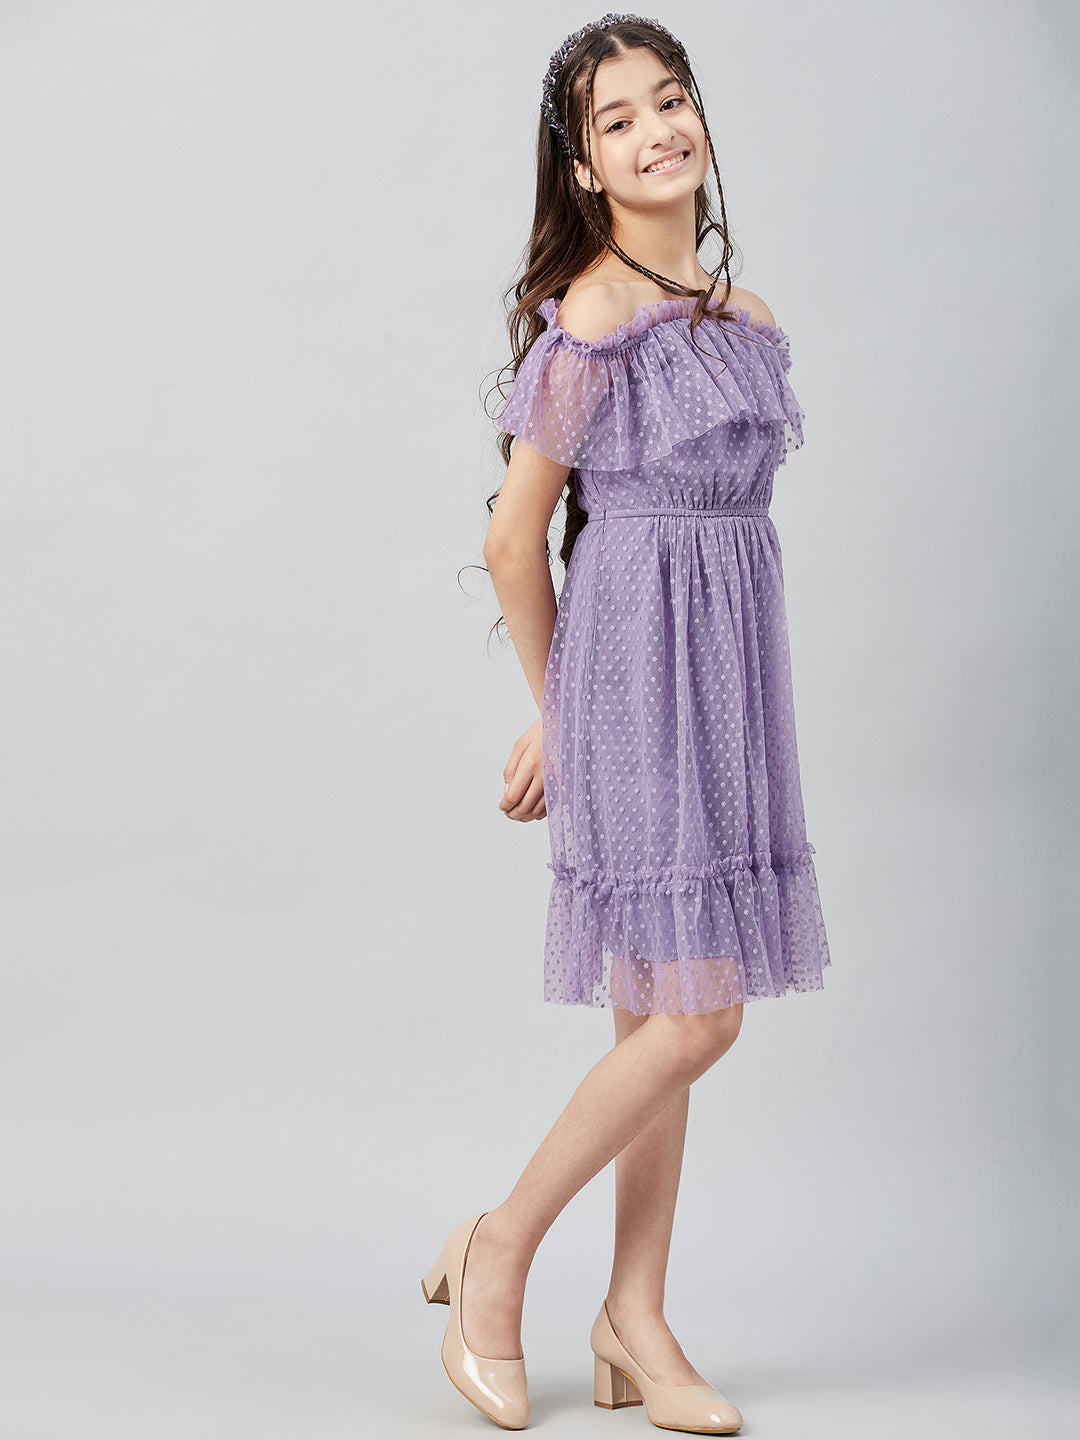 Athena Girl Lavender Off-Shoulder Dress - Athena Lifestyle